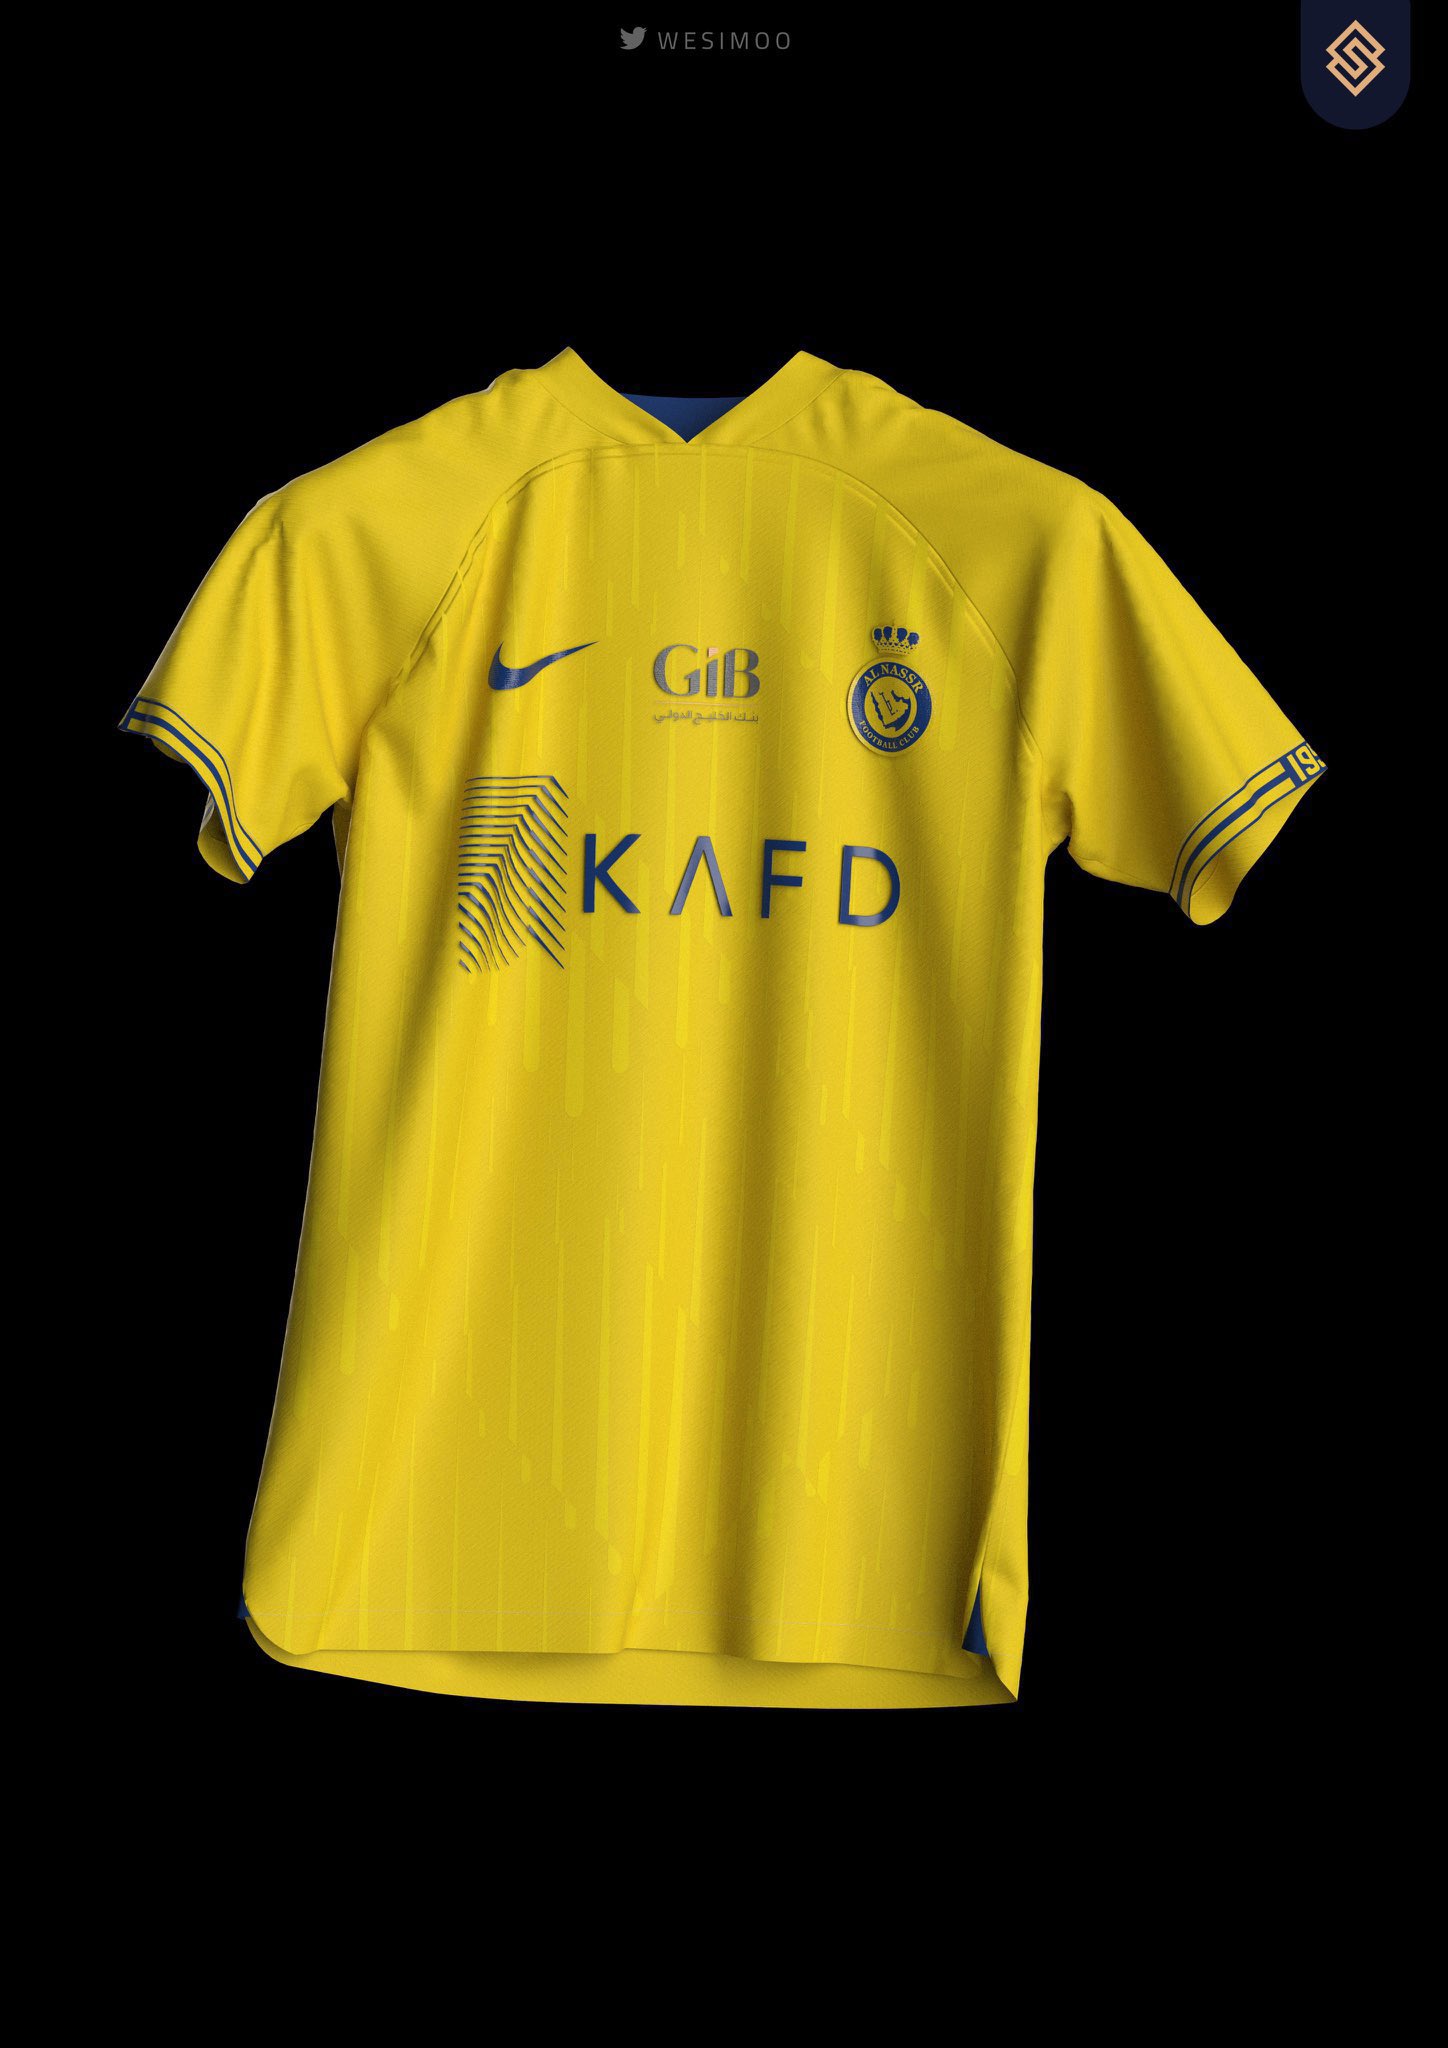 Blue on X: Se filtra la que será la nueva camiseta de Cristiano Ronaldo  del Al Nassr, de la temporada 2023/24 🔵🟡  / X